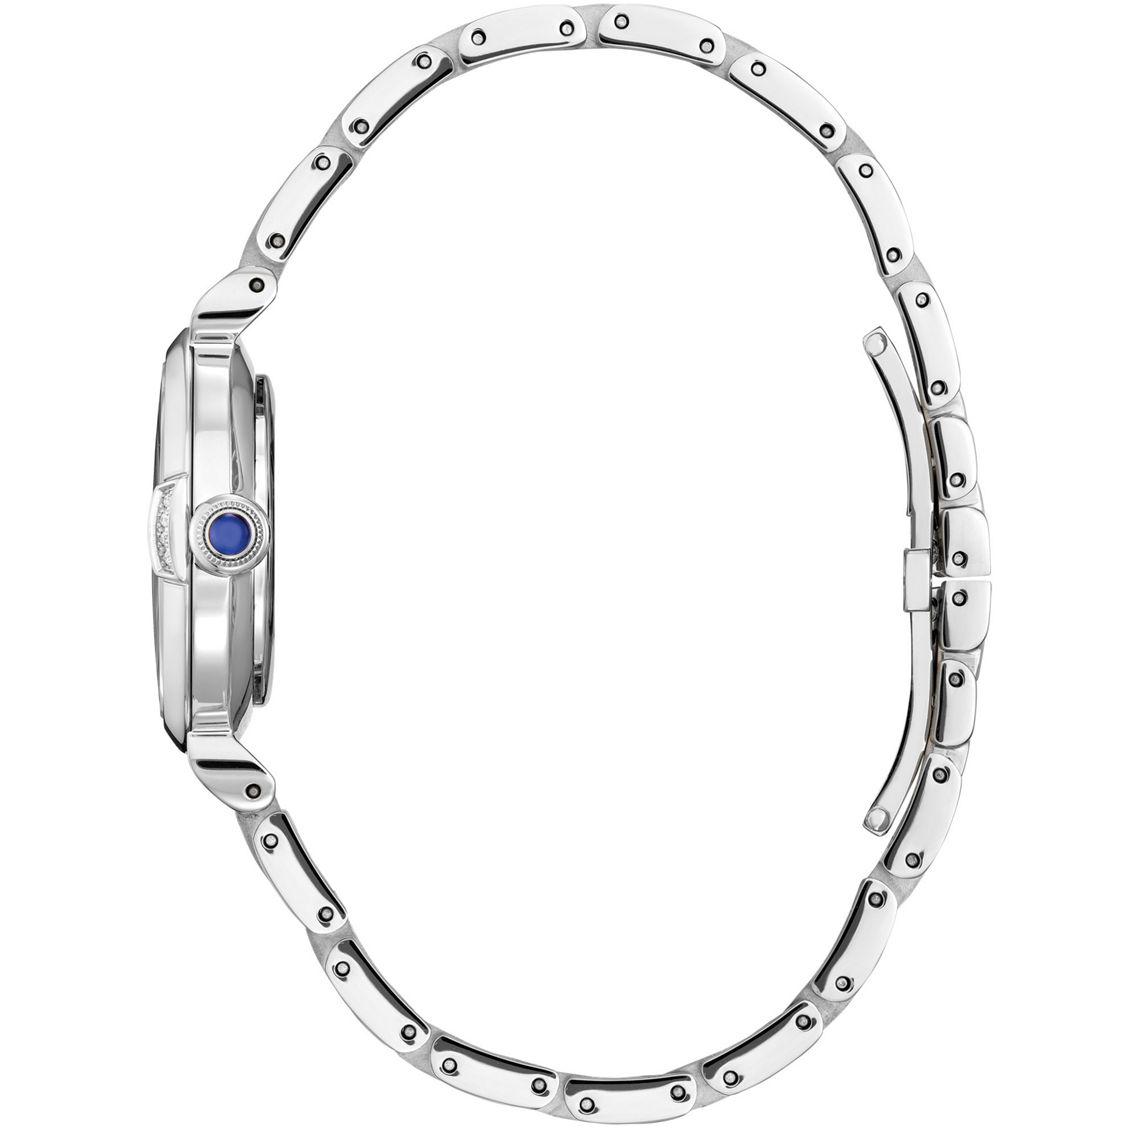 Citizen Women's L Mae Stainless Steel Bracelet Watch 29.5mm EM1060-52N - Image 3 of 3